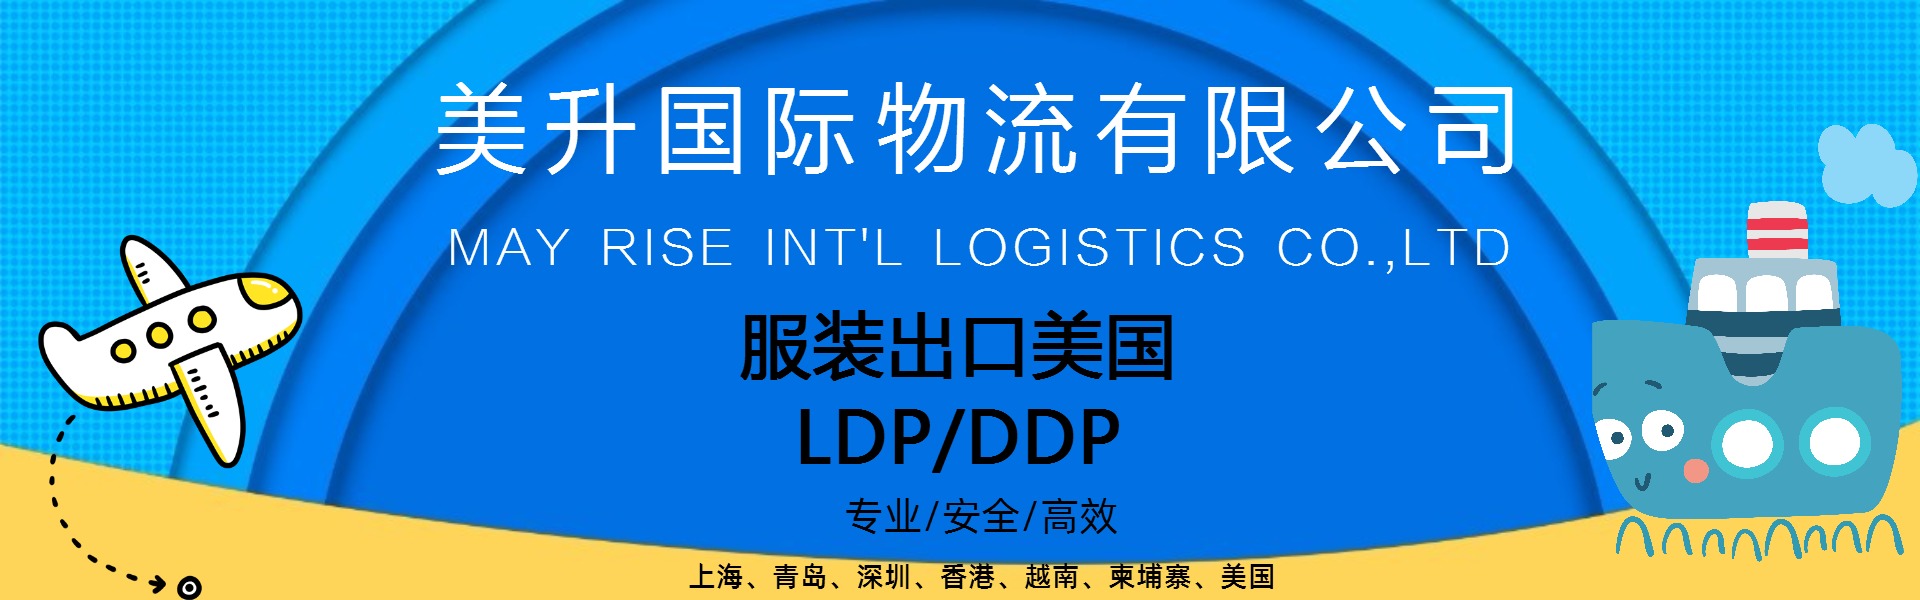 福建棉衣出口美国LDP/DDP服务